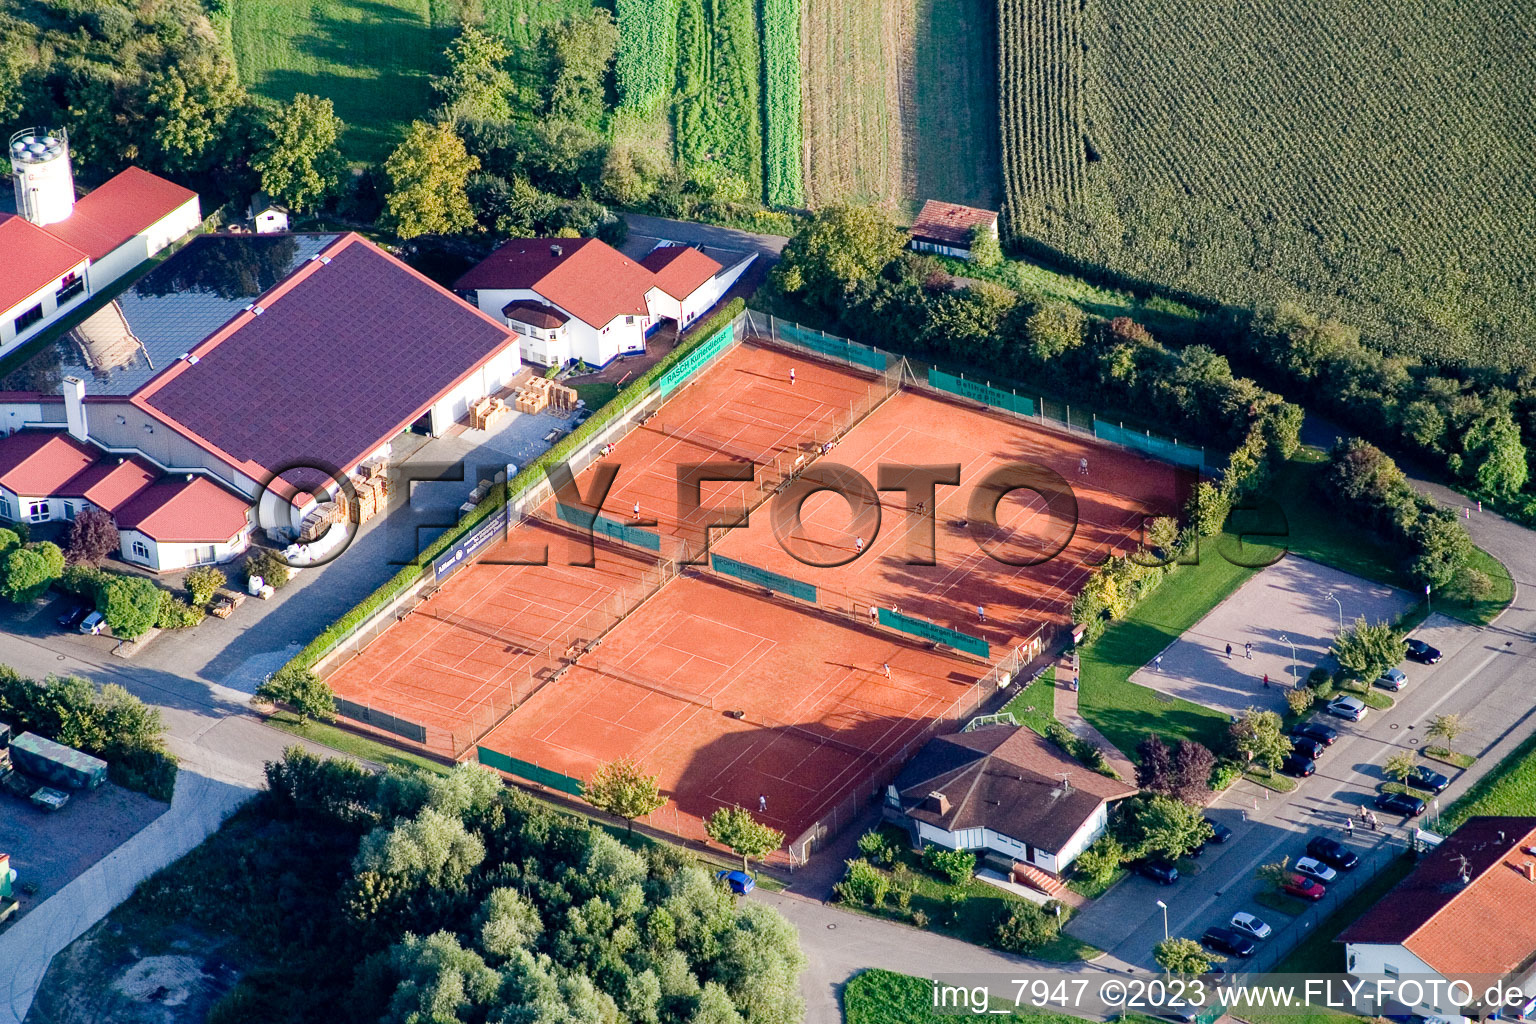 Photographie aérienne de Club de tennis à Neuburg dans le département Rhénanie-Palatinat, Allemagne